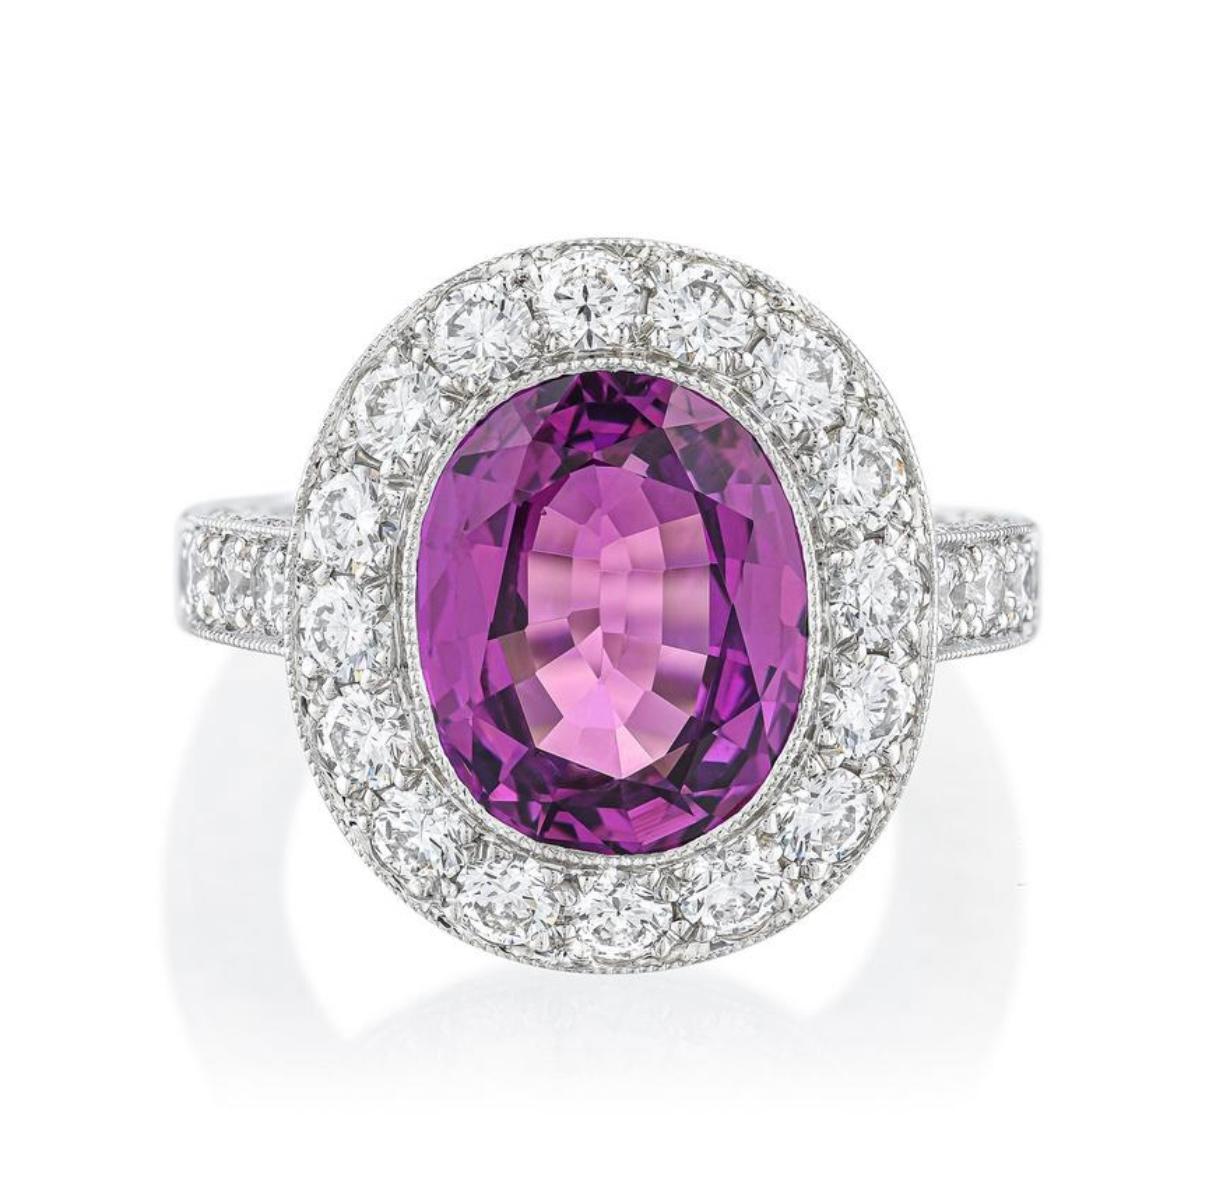 Anillo de zafiro púrpura y diamantes, certificado por el GIA, elaborado en platino: engastado con un zafiro púrpura facetado de forma ovalada, con un peso aproximado de 4,50 quilates: acentuado por diamantes talla brillante redondos, con un peso